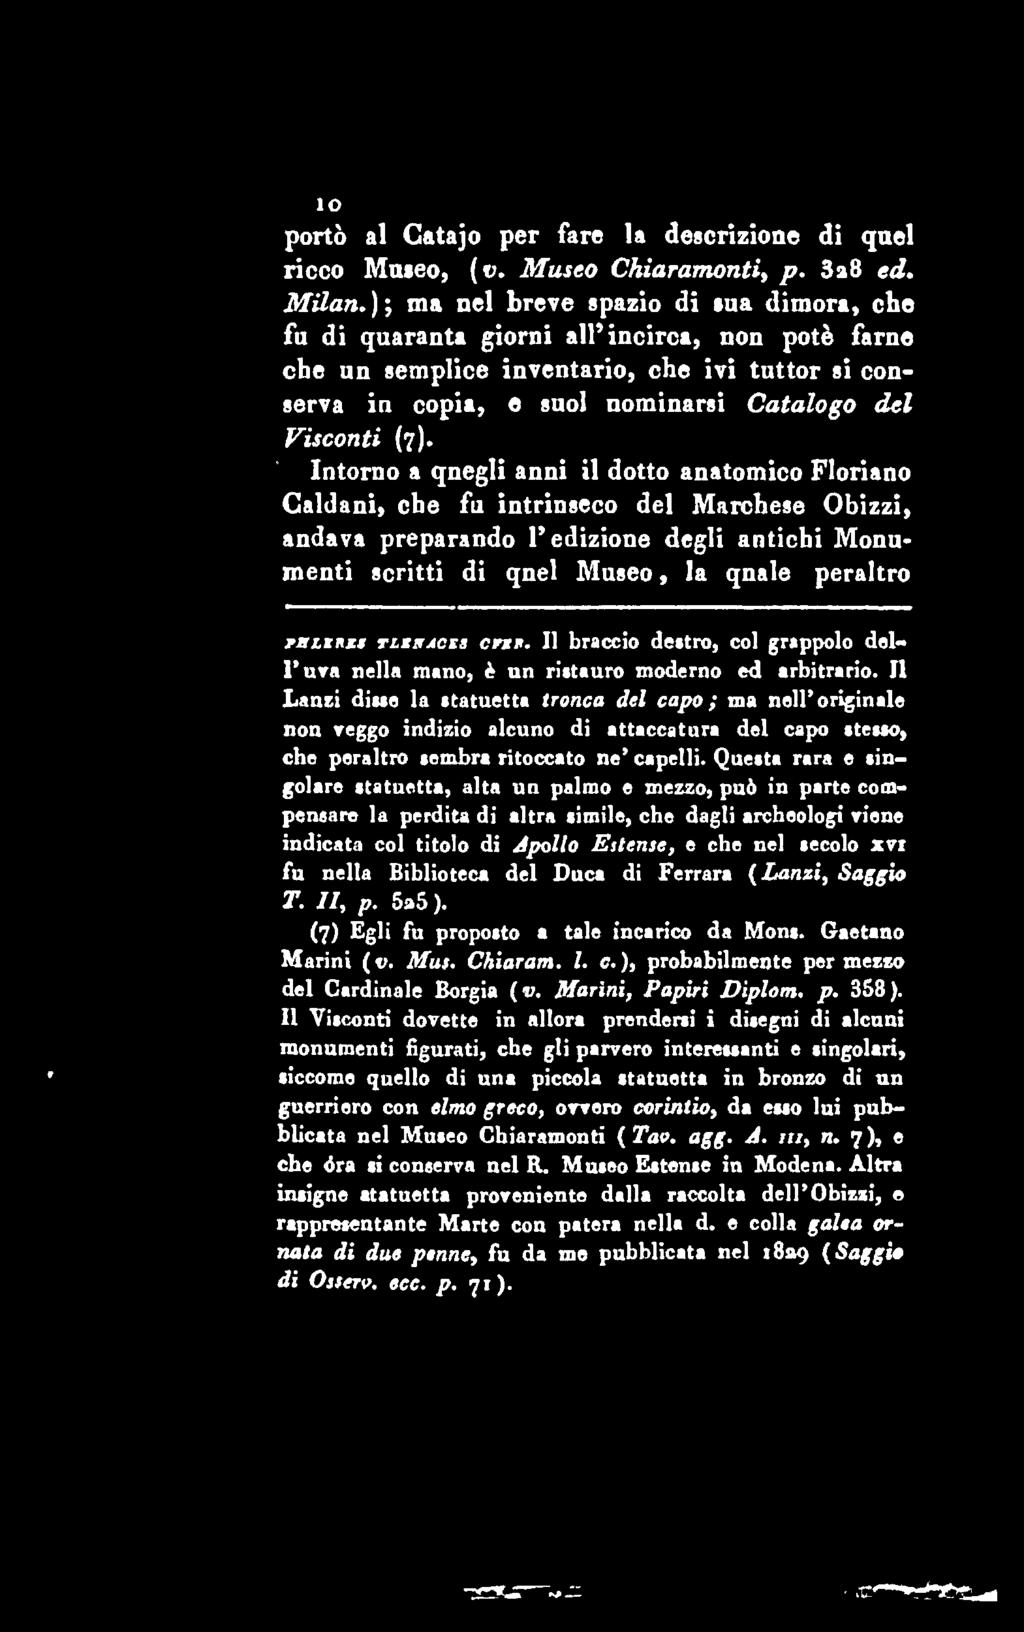 lo porto al Catajo per fare la descrizioae di qael ricco Maseo, (v. Museo Chiaramonti, p. 3a8 ed. Milan.